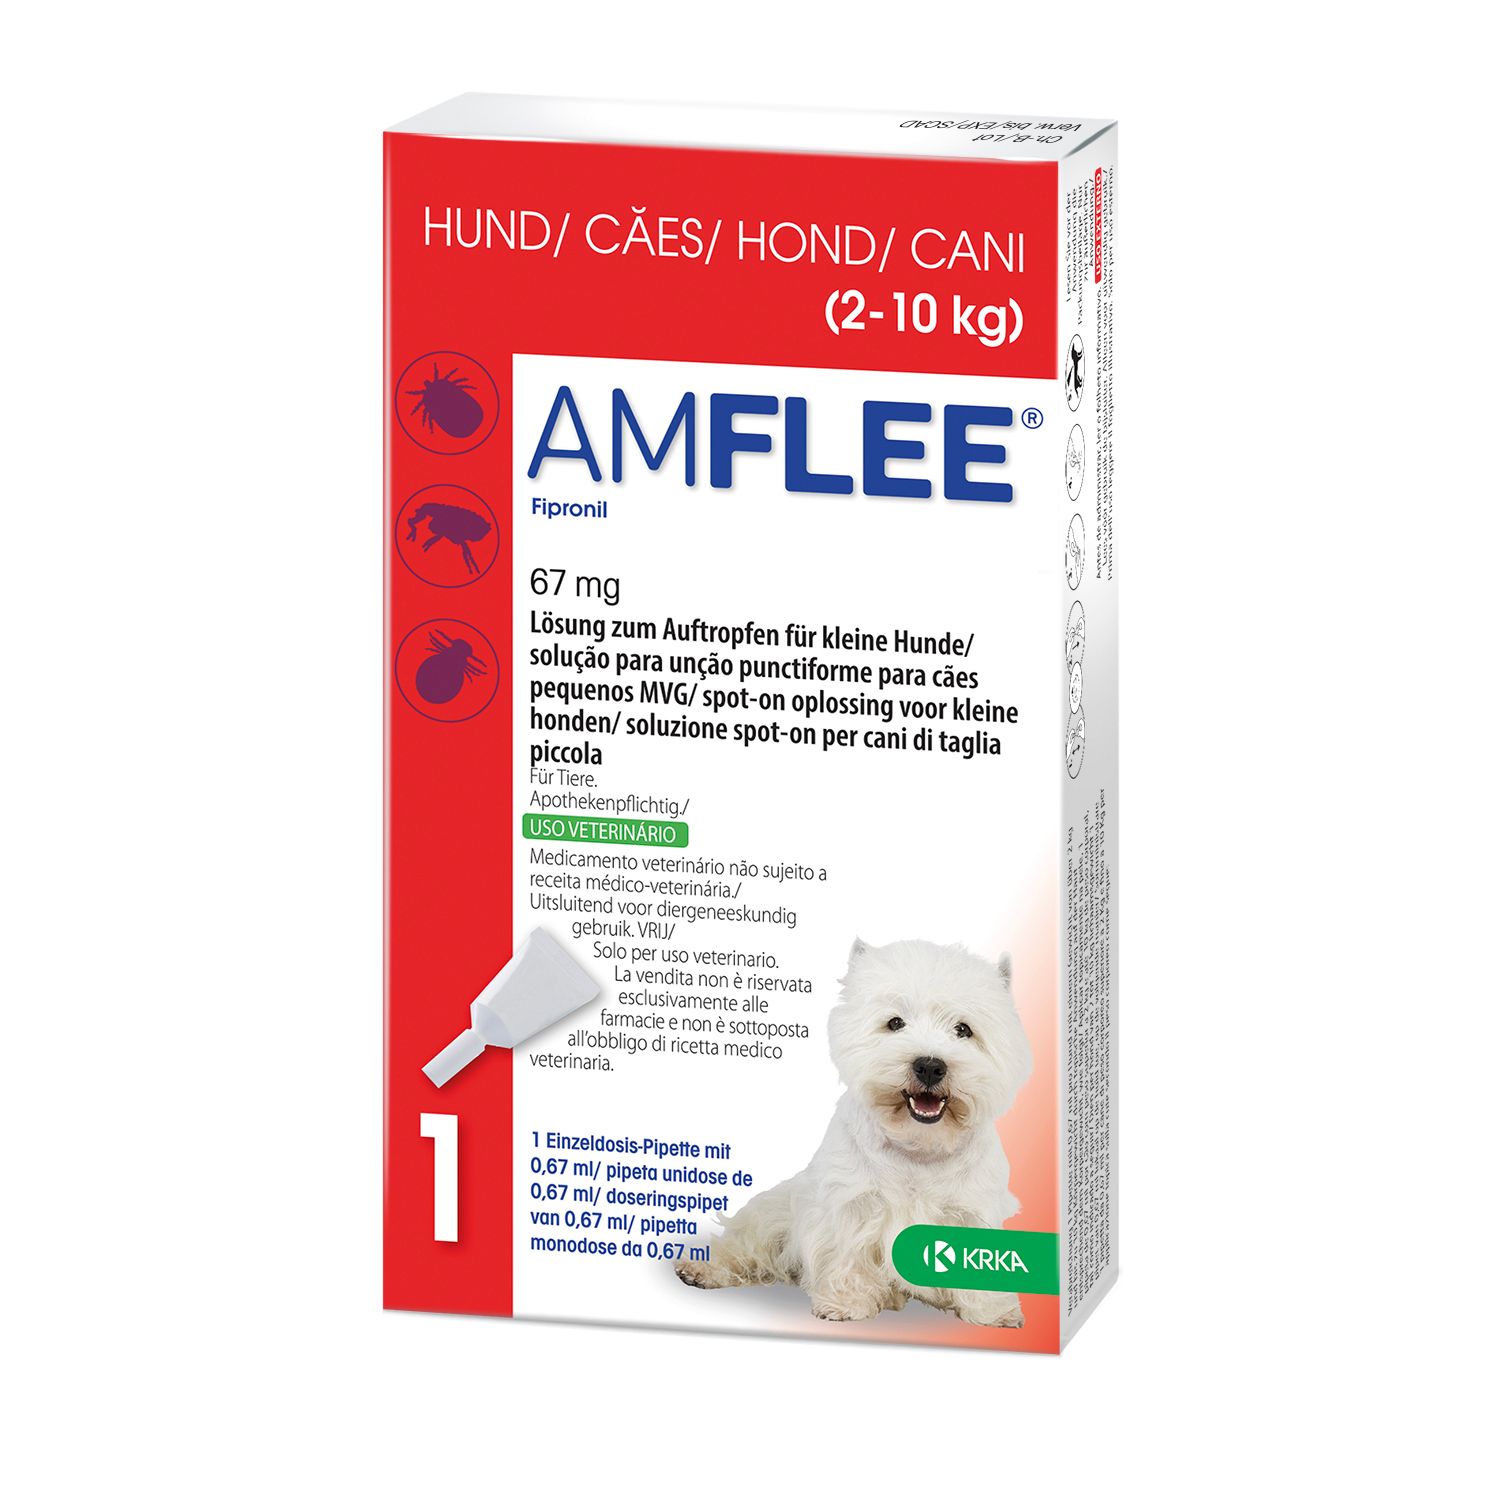 Amflee® 67 mg für kleine Hunde